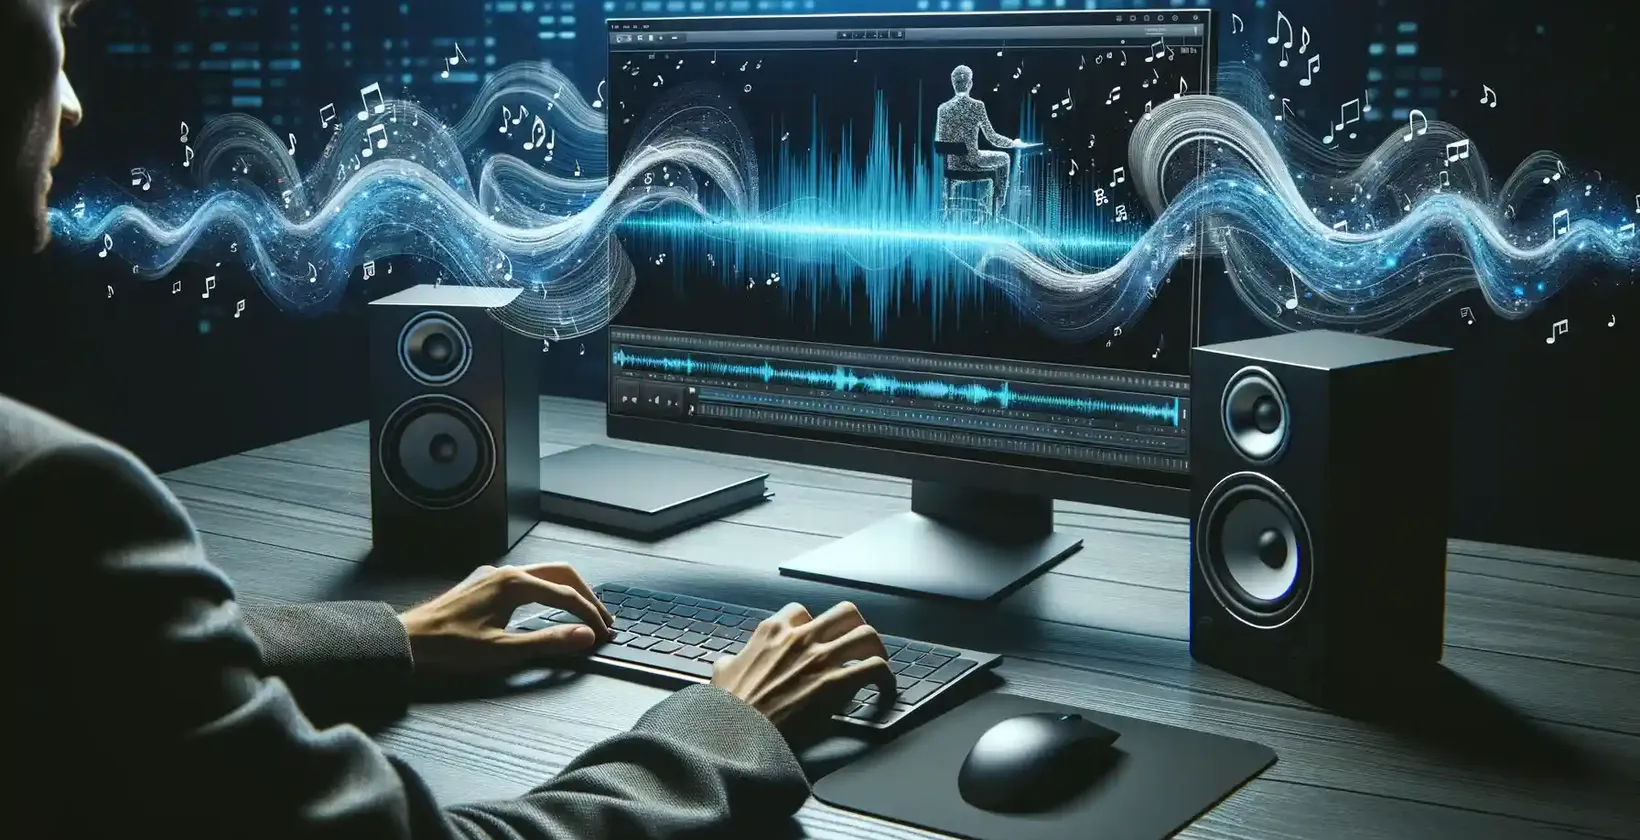 Moderný pracovný priestor osvetlený digitálnym rozhraním, na ktorom je zobrazený muž zaujatý úpravou zvuku.